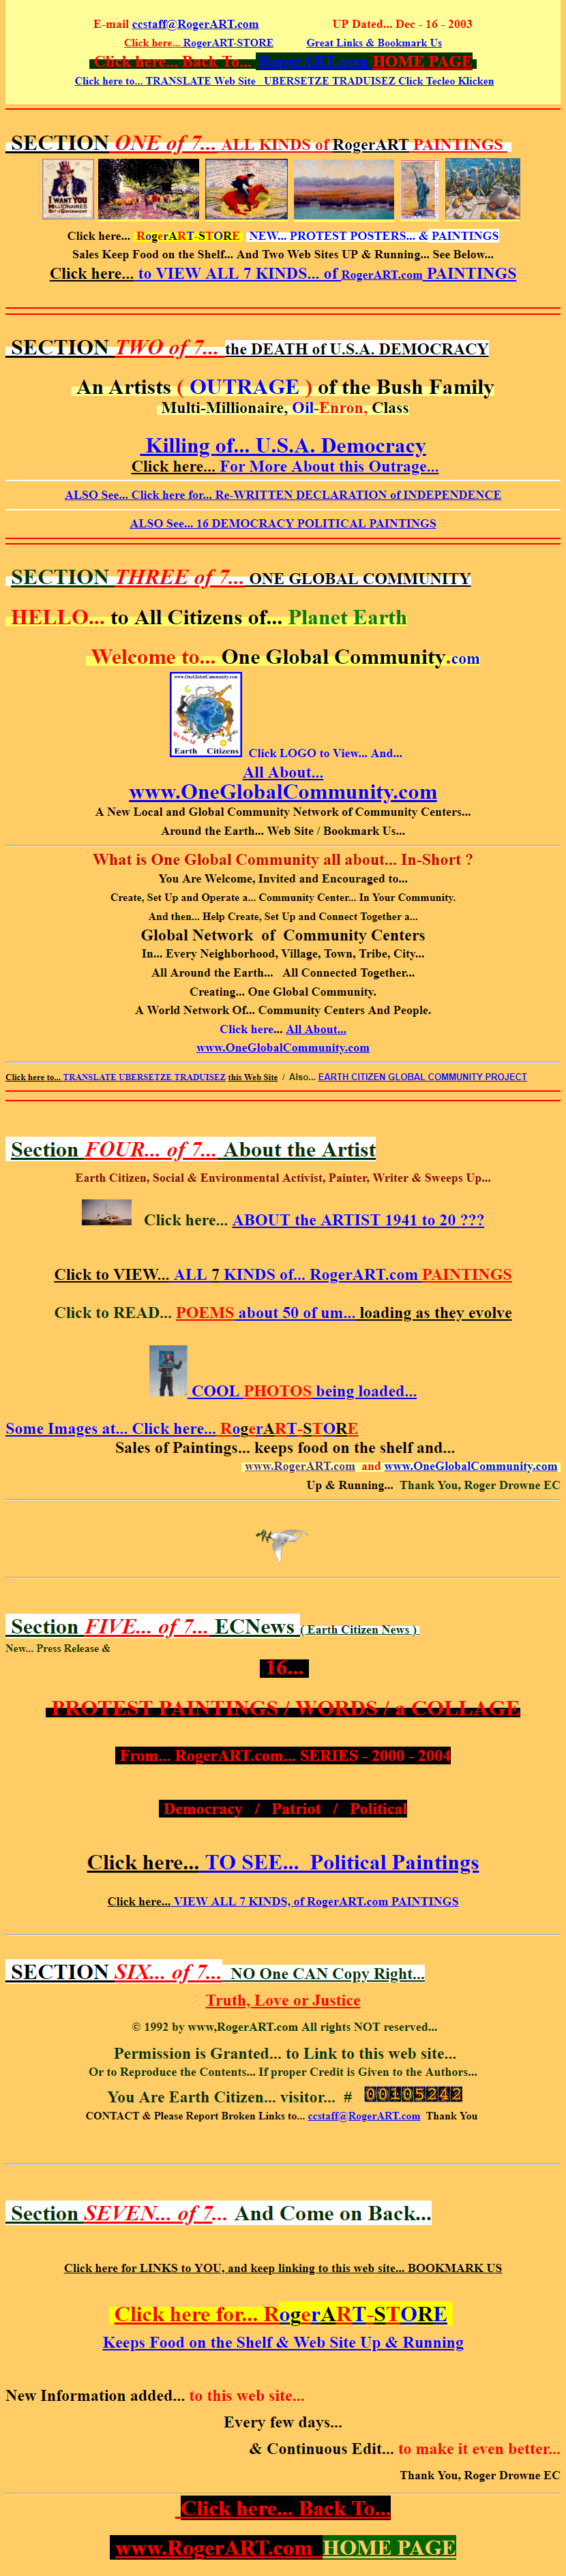 RogerART website in 2003